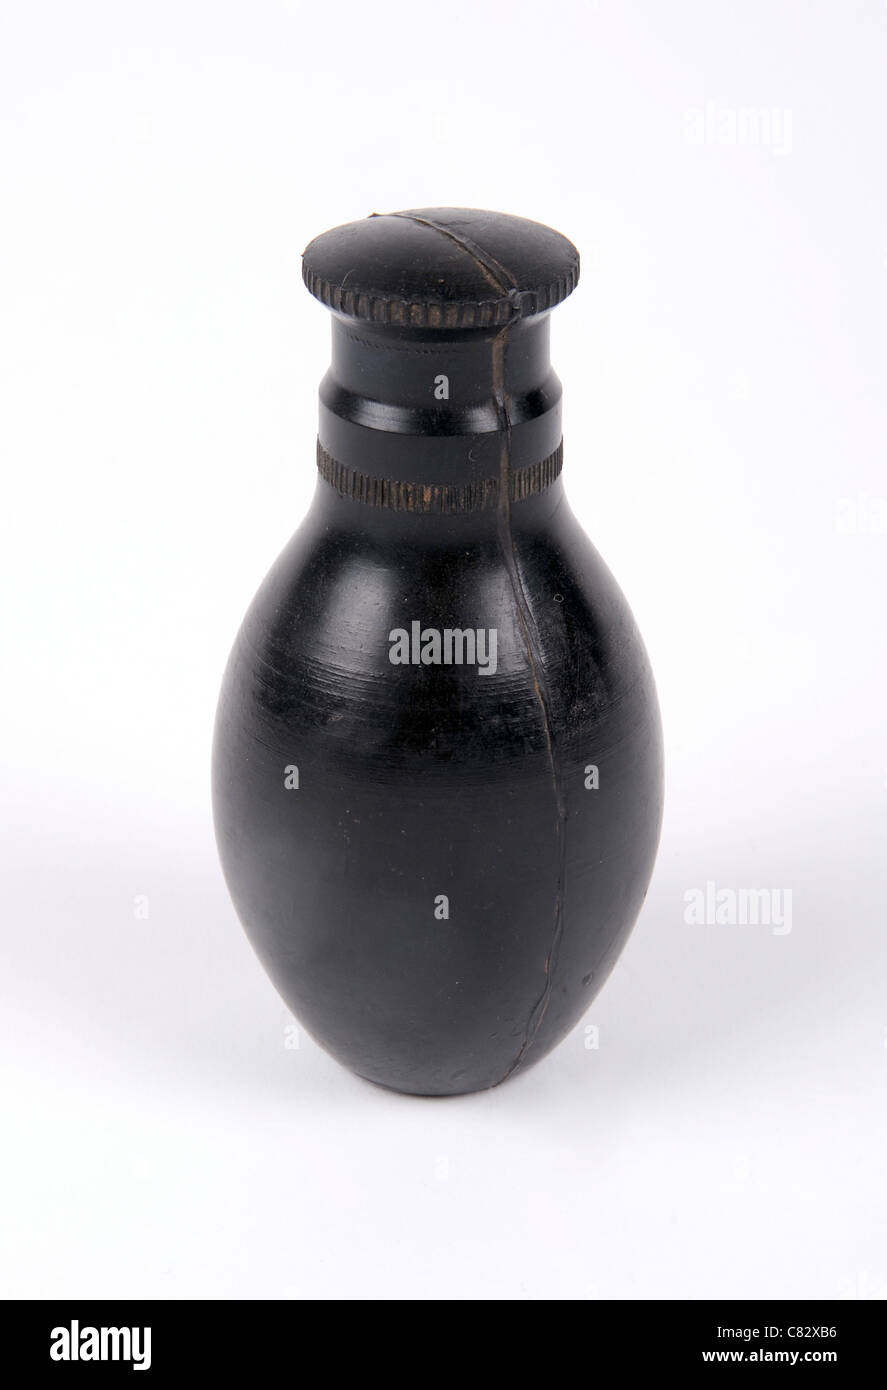 Gomma jugoslavo della formazione granata. Essa ha lo stesso peso di una granata accesa senza il pericolo di una carica esplosiva, Foto Stock